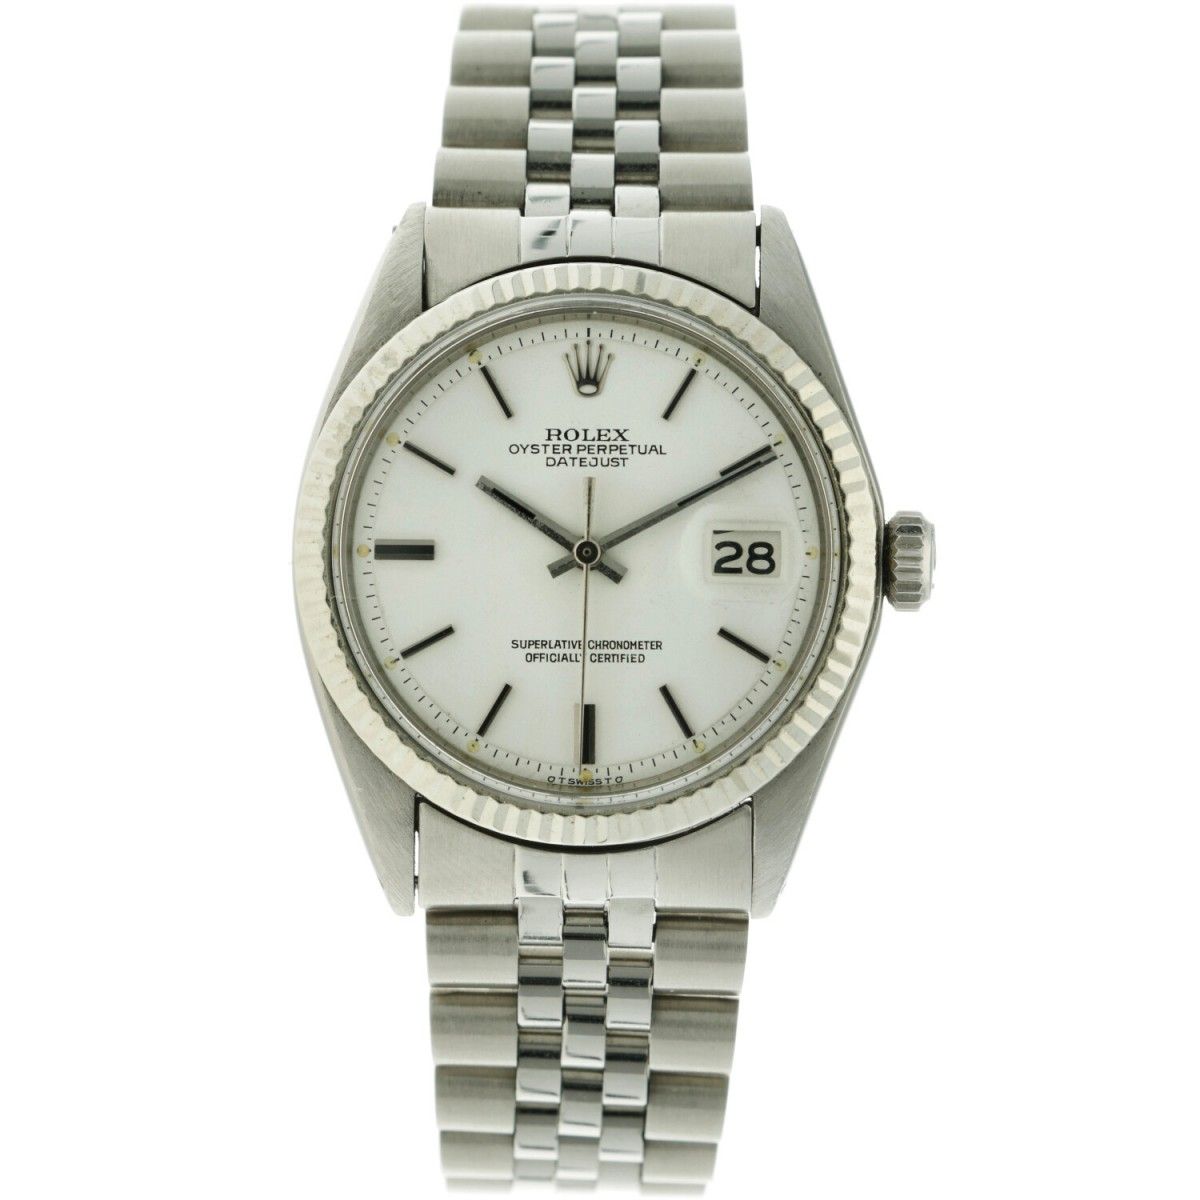 Rolex Datejust Sigma Dial 1601 - Men's watch -apprx. 1972. Case: steel - bracele&hellip;